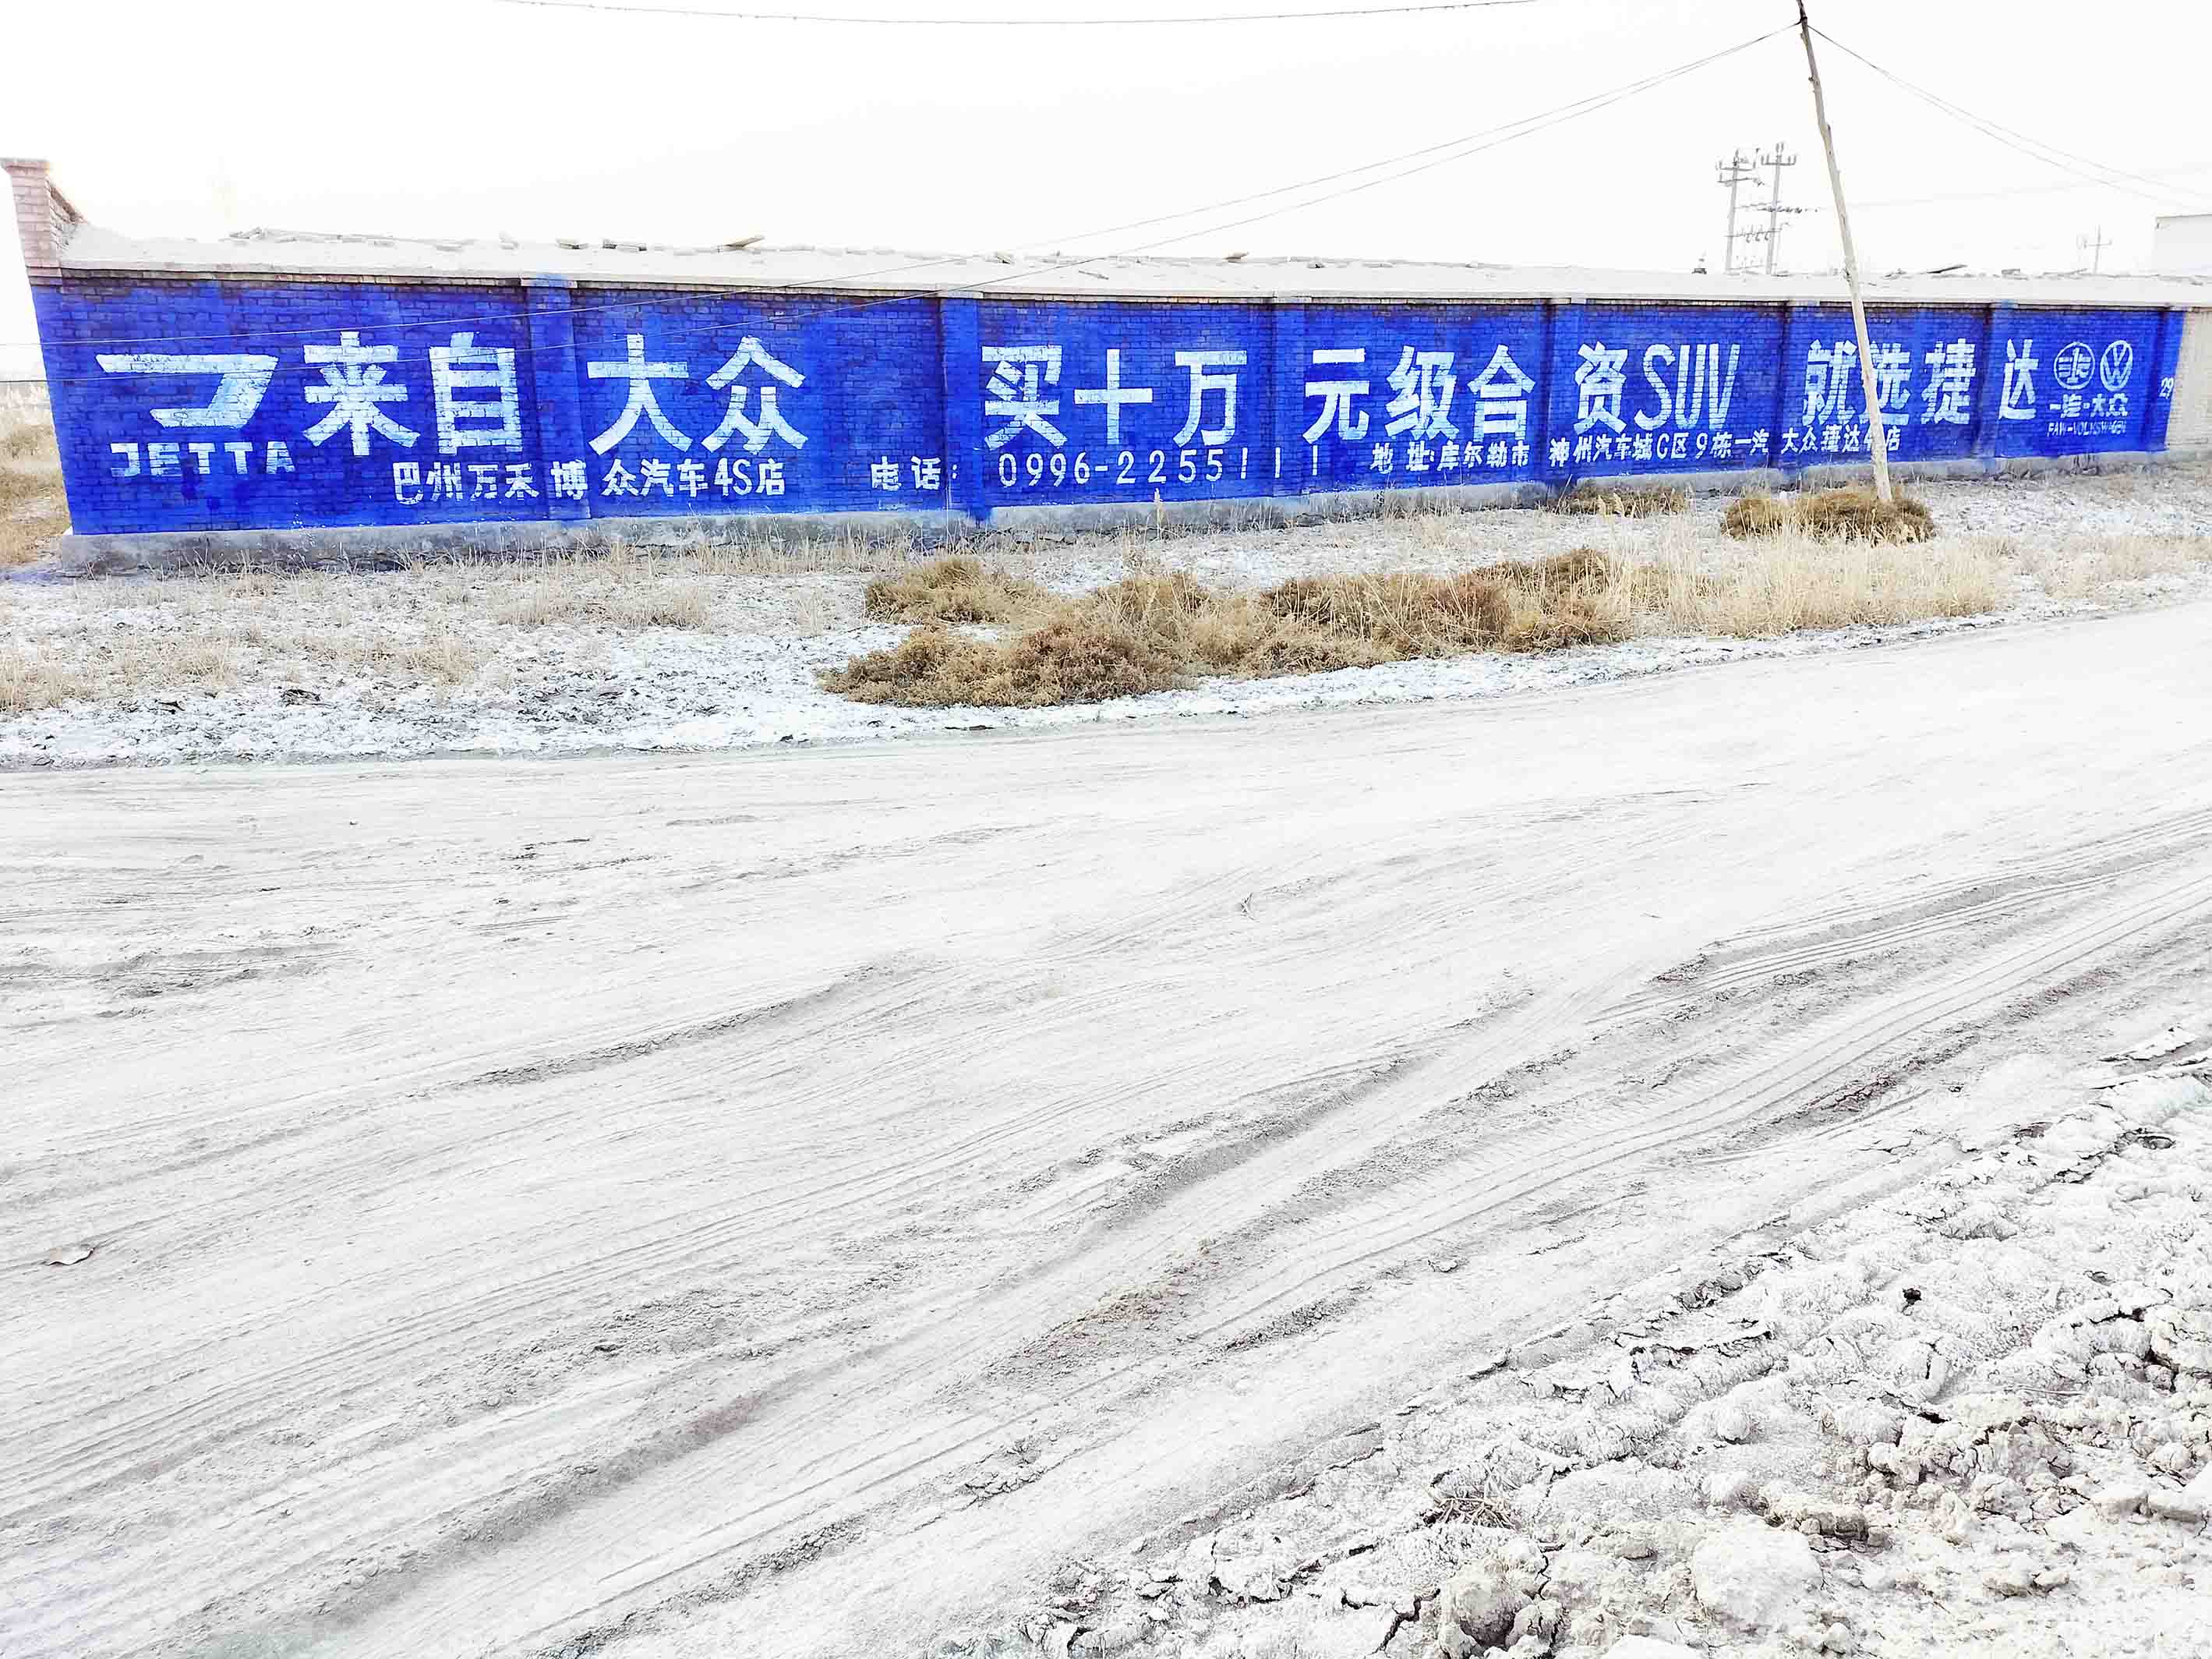 捷达汽车新疆地区（手绘）墙体广告精选照片近景2